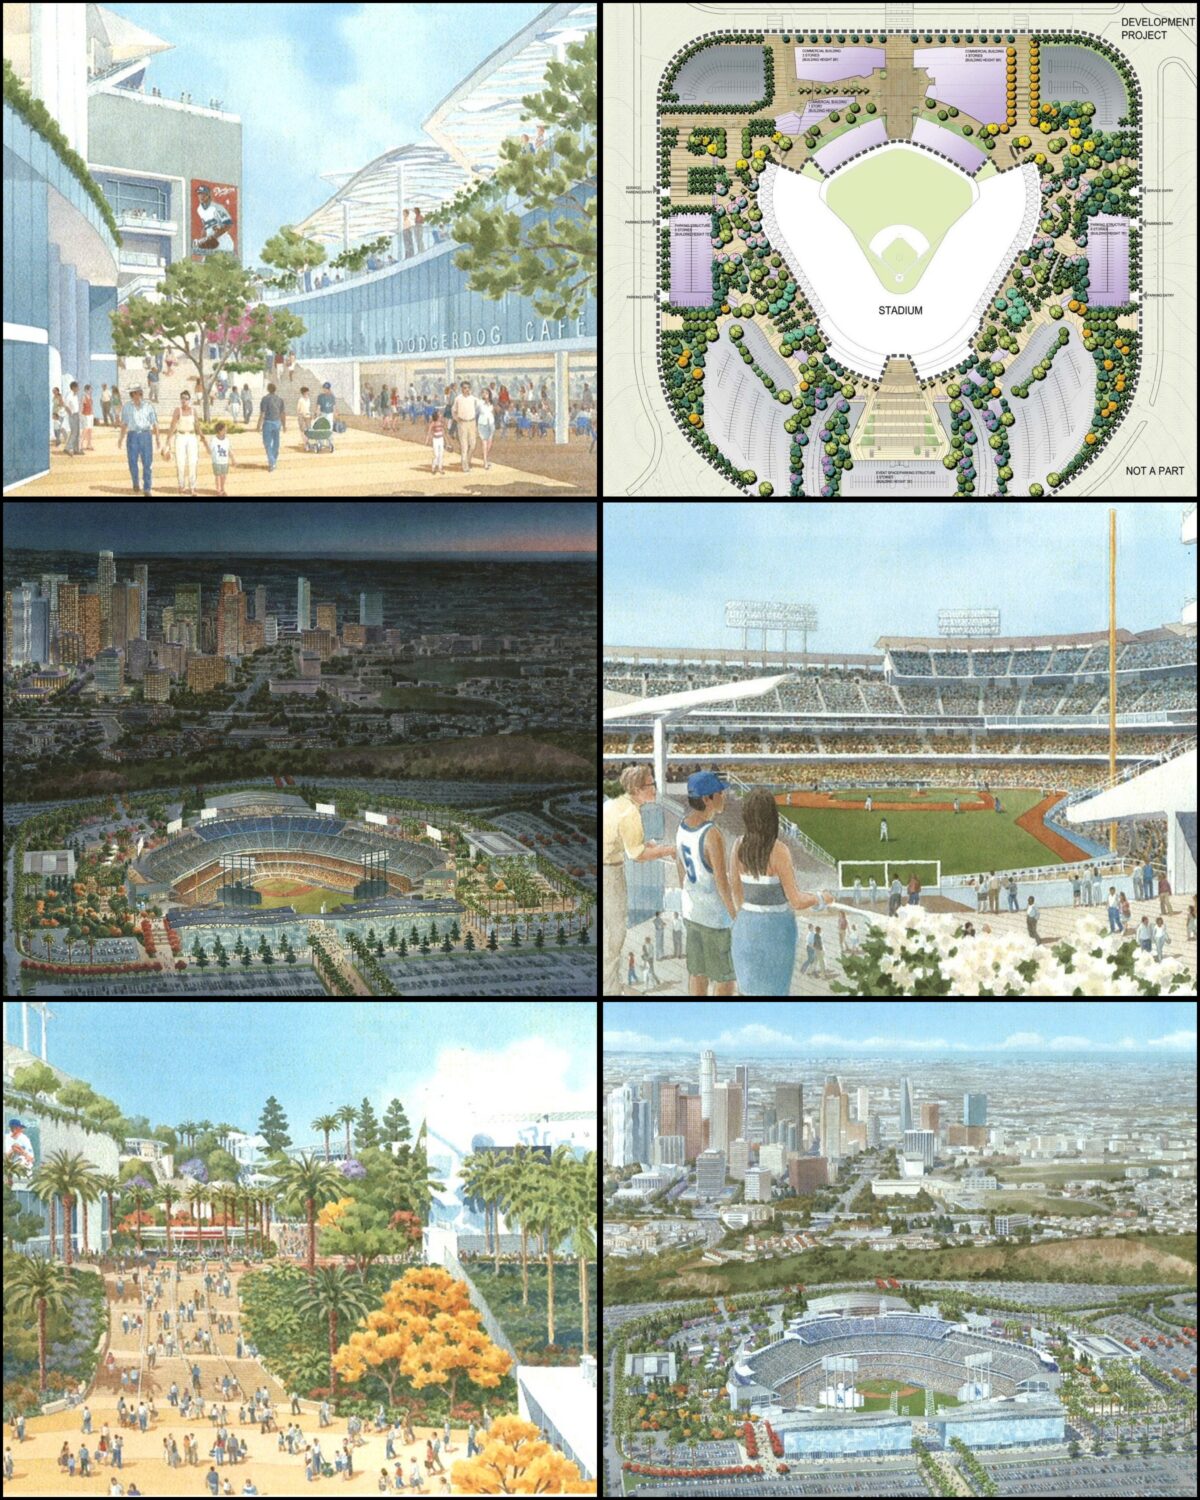 Draft EIR published for Dodger Stadium - Union Station gondola